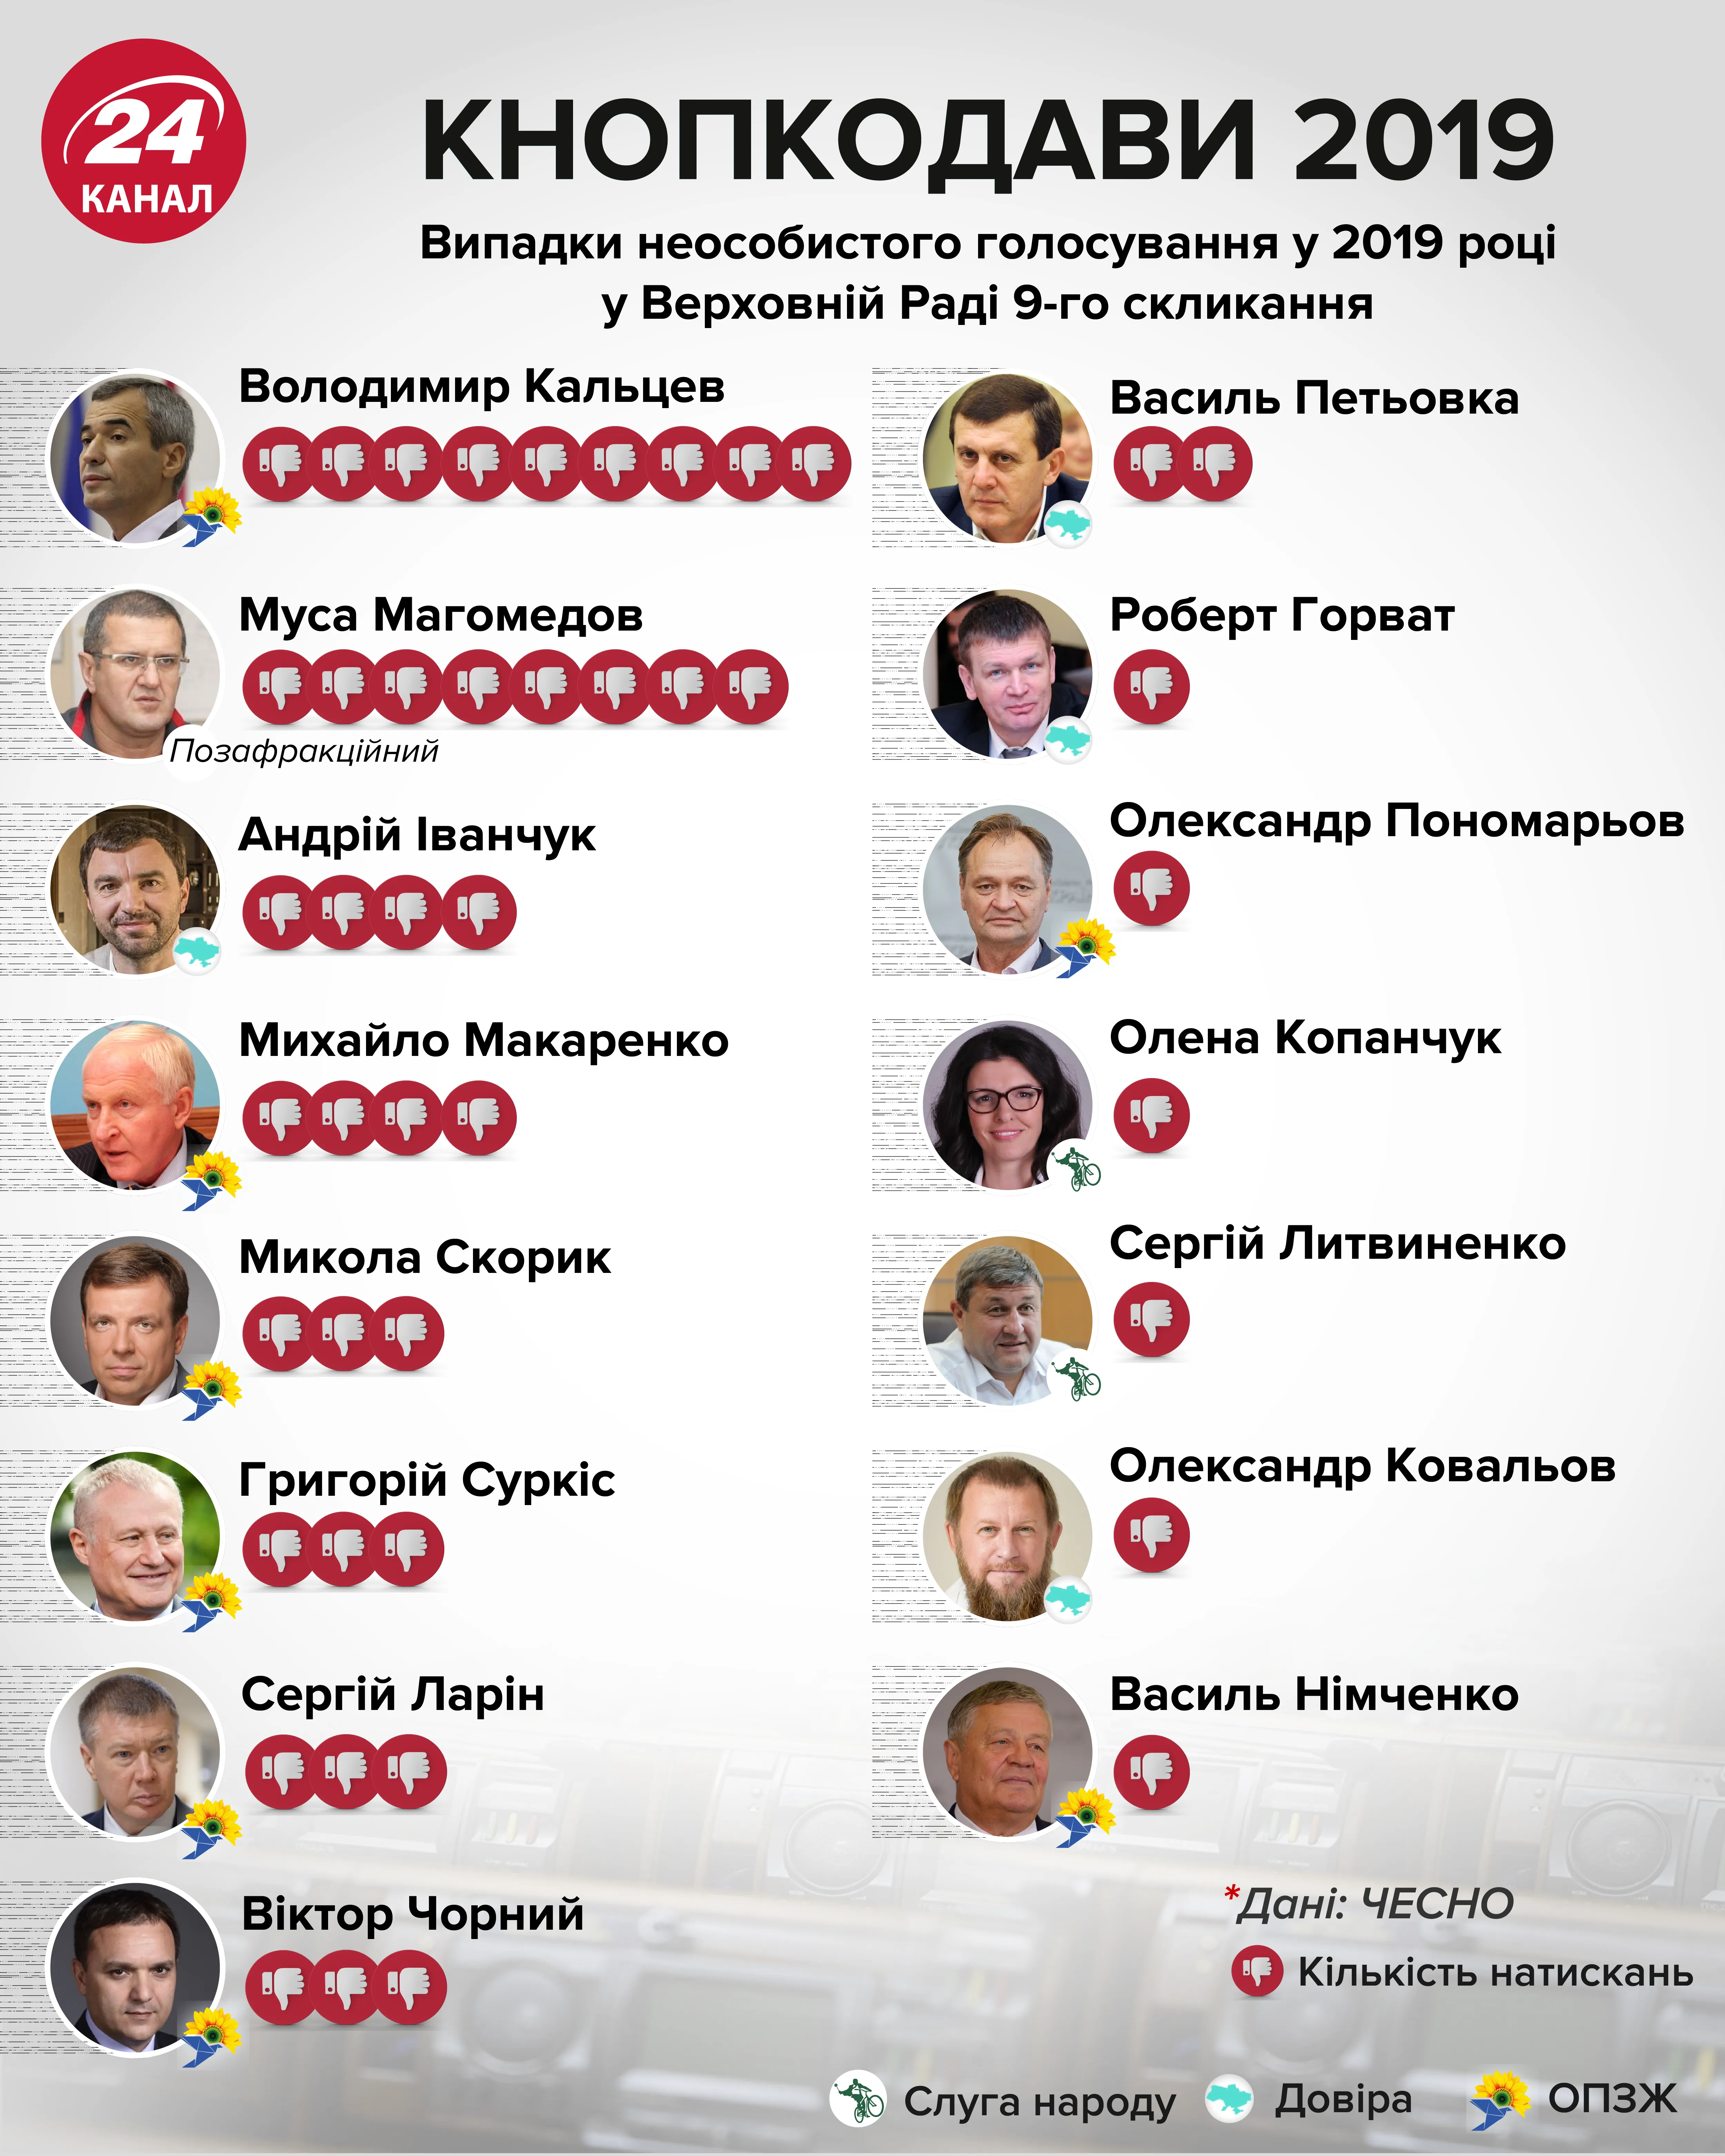 Кнопкодави 2019 Верховна Рада депутати інфографіка 24 канал